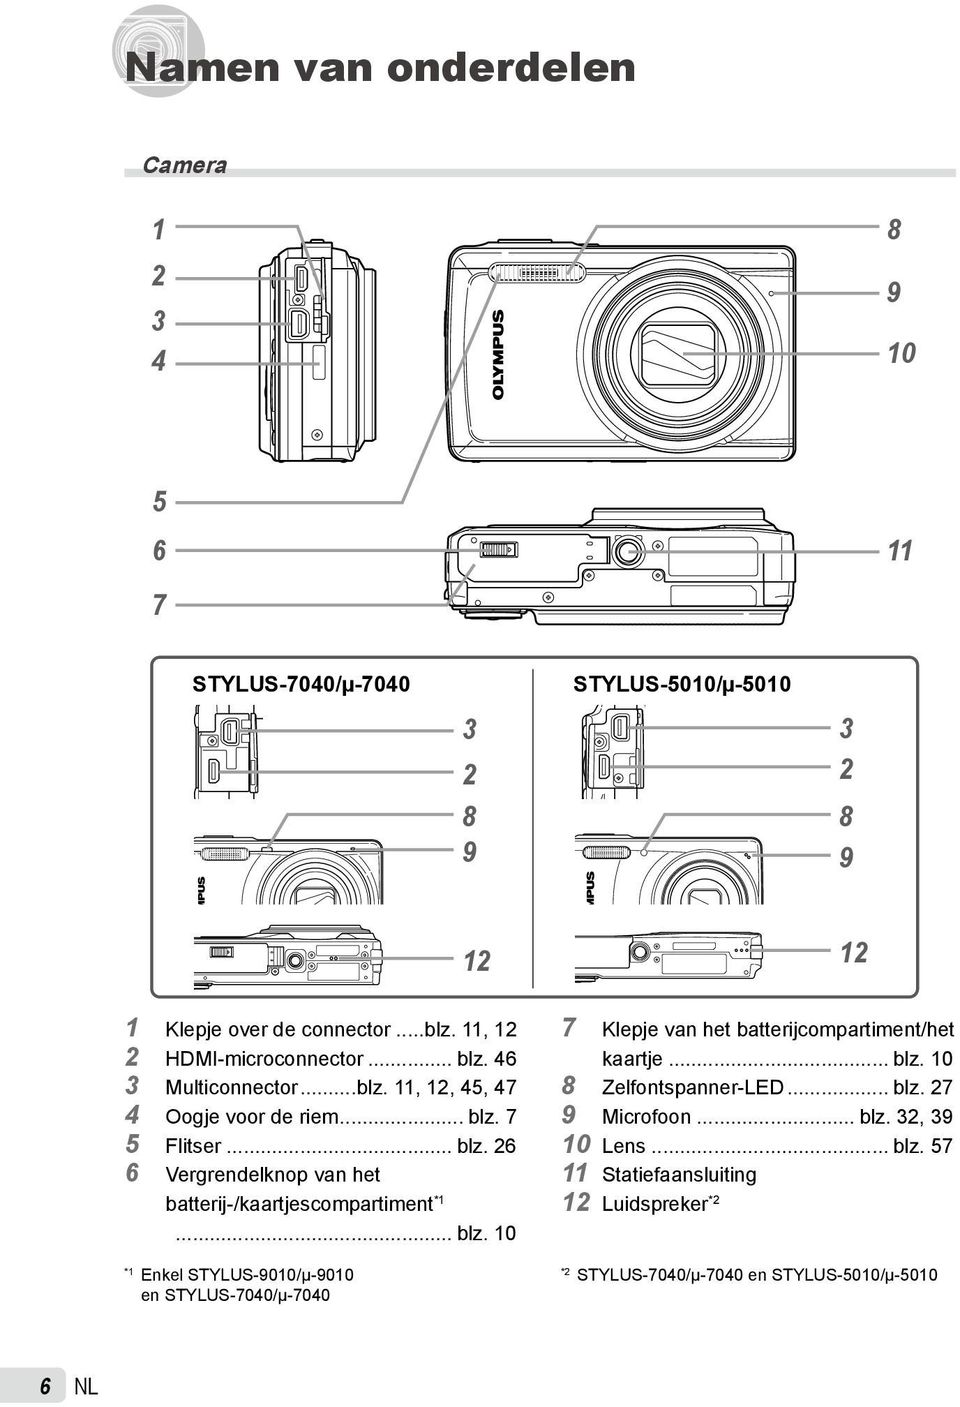 .. blz. 10 *1 Enkel STYLUS-9010/μ-9010 en STYLUS-7040/μ-7040 7 Klepje van het batterijcompartiment/het kaartje... blz. 10 8 Zelfontspanner-LED... blz. 27 9 Microfoon.